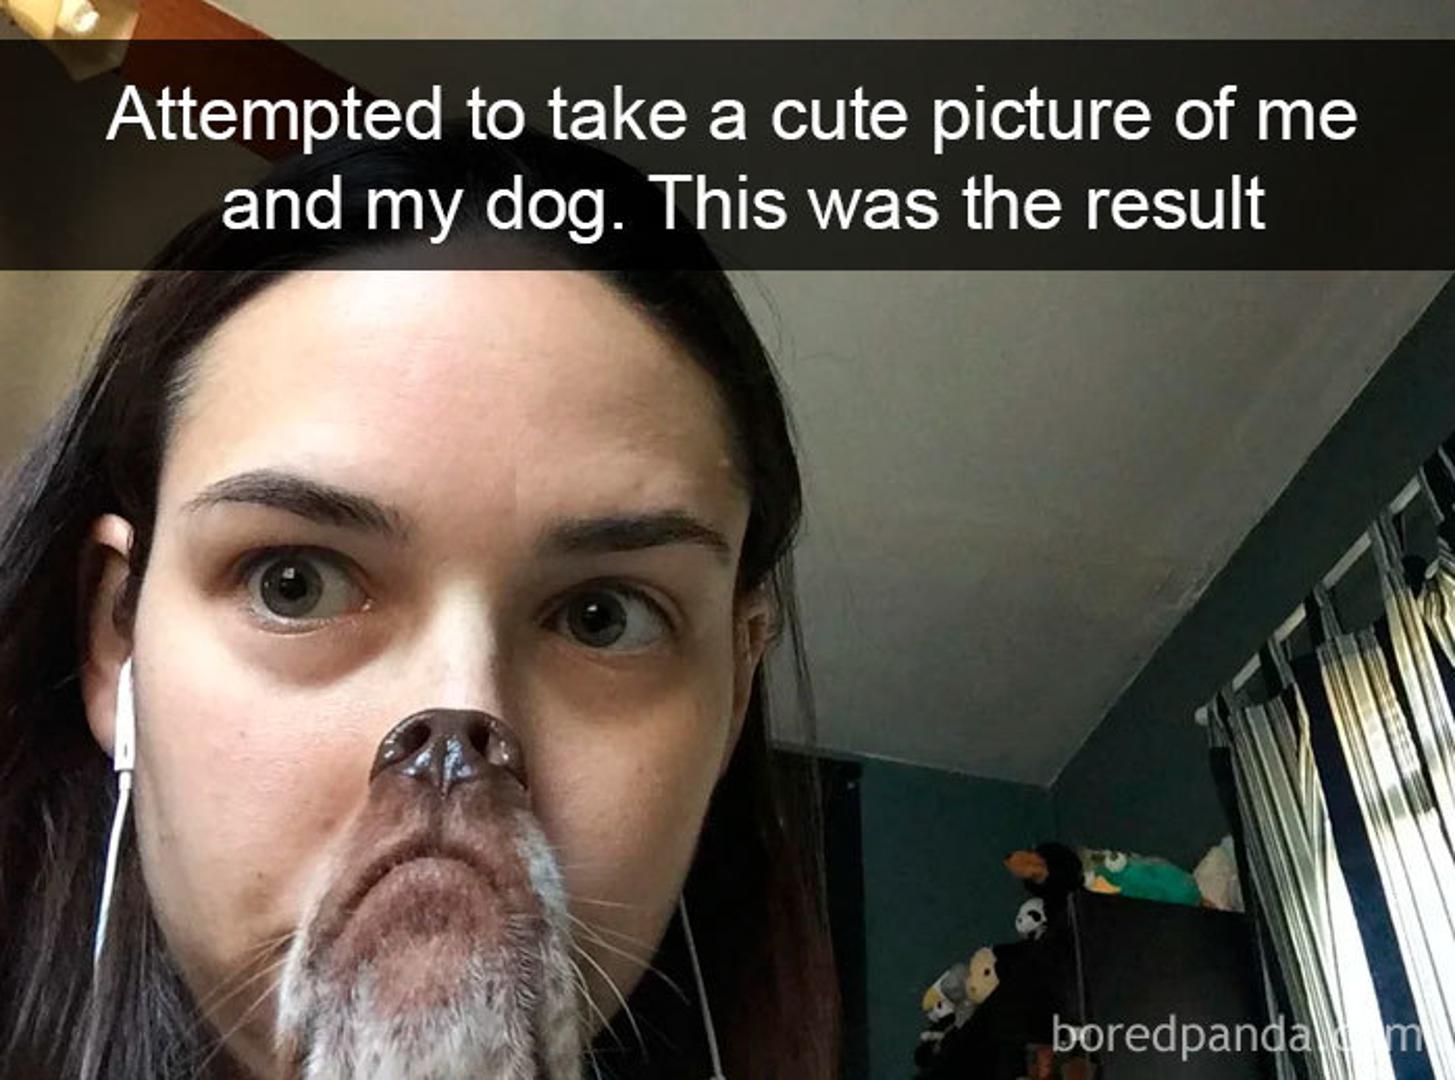 "Samo sam htjela uslikati slatku sliku sa svojim psom", komentirala je vlasnica.